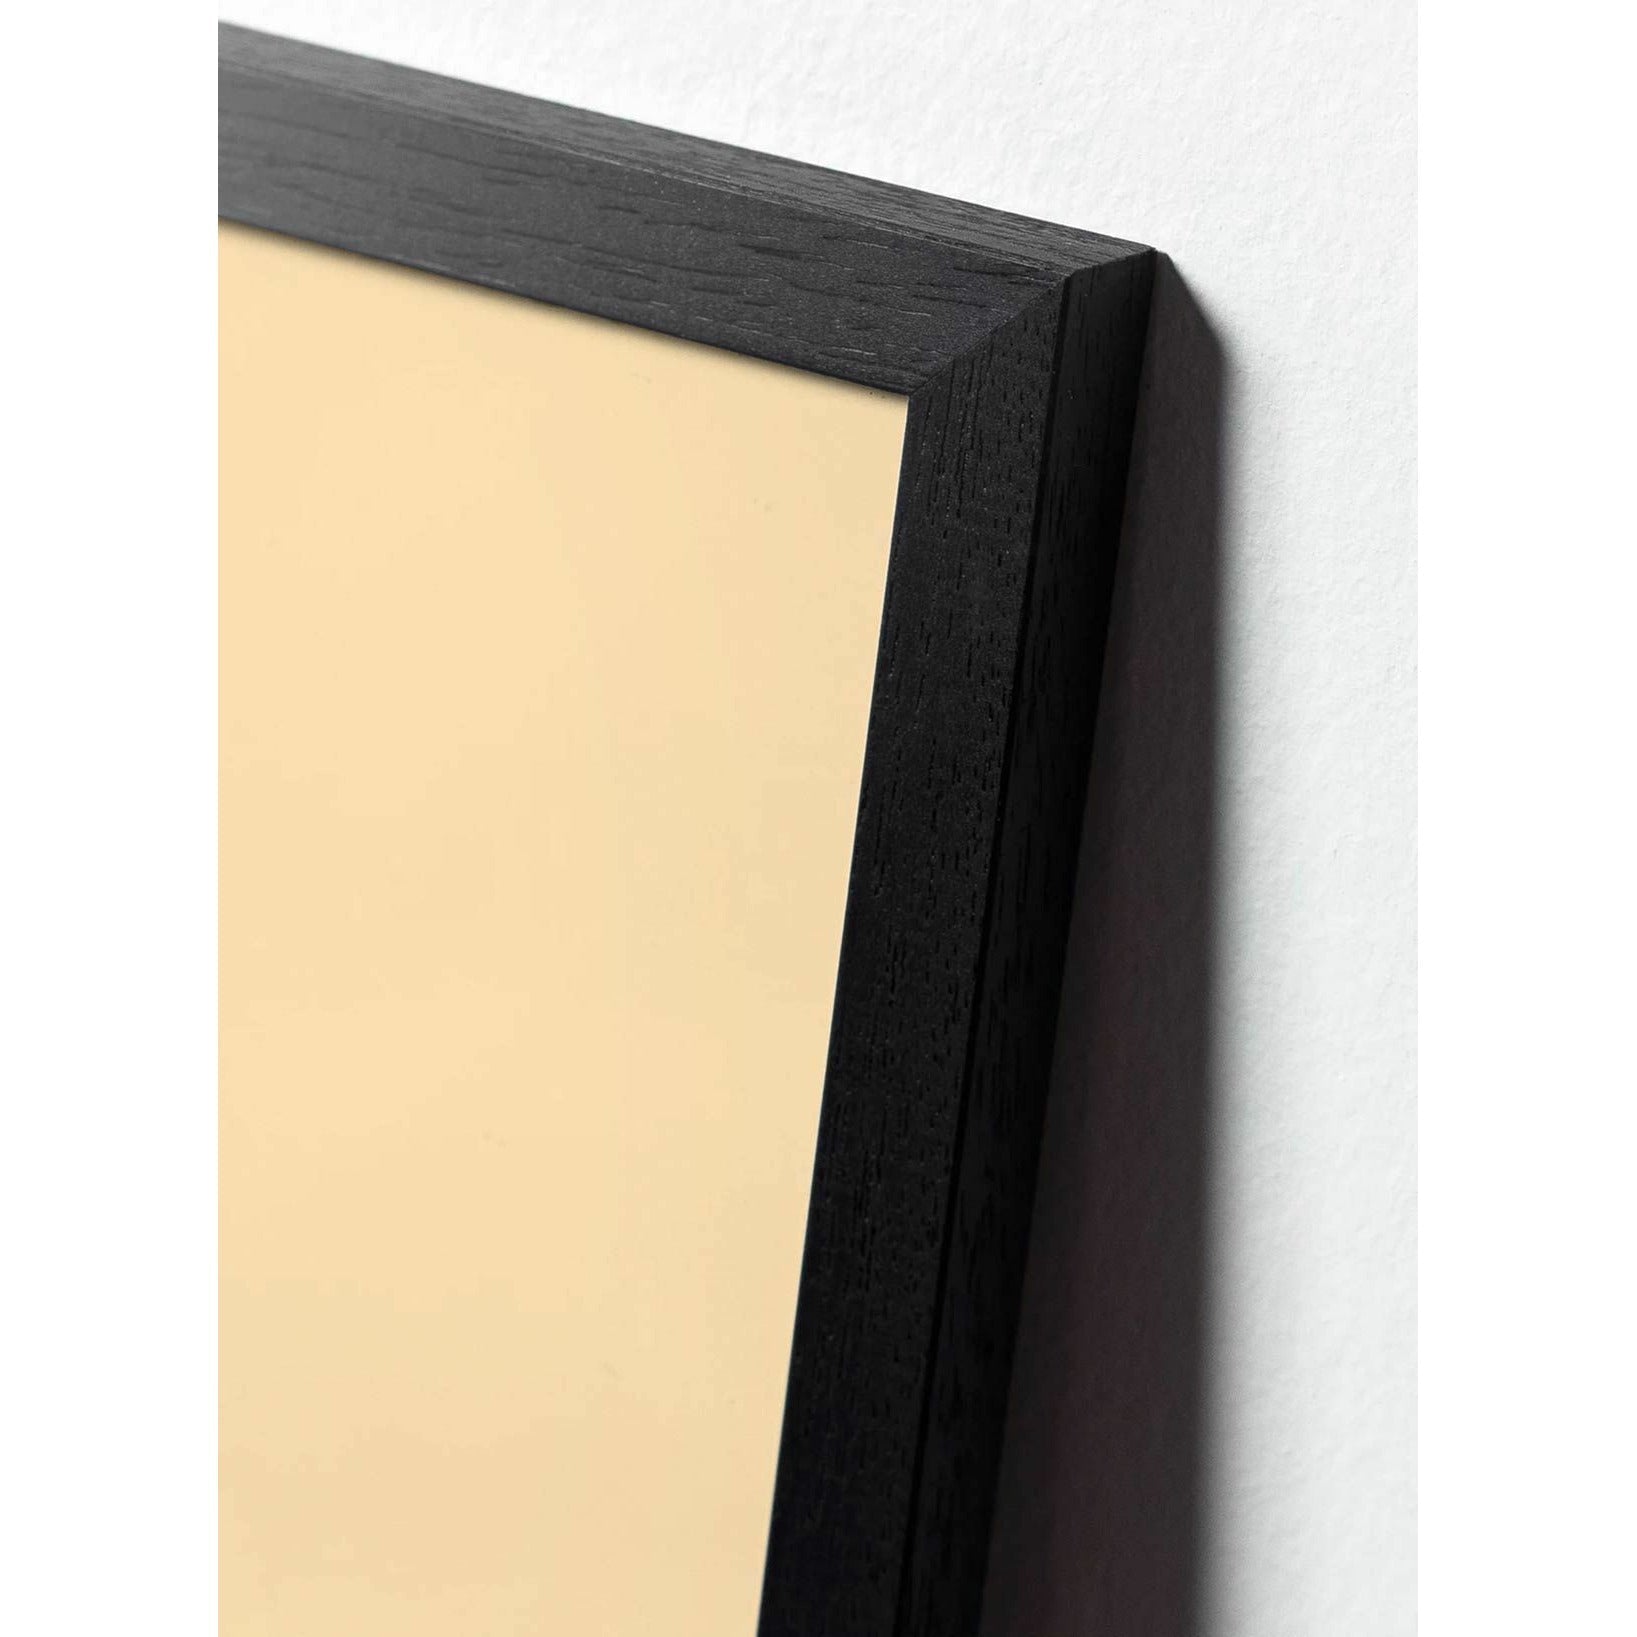 Plakát s labutí linií, rám v černém lakovaném dřevu 30x40 cm, bílé pozadí